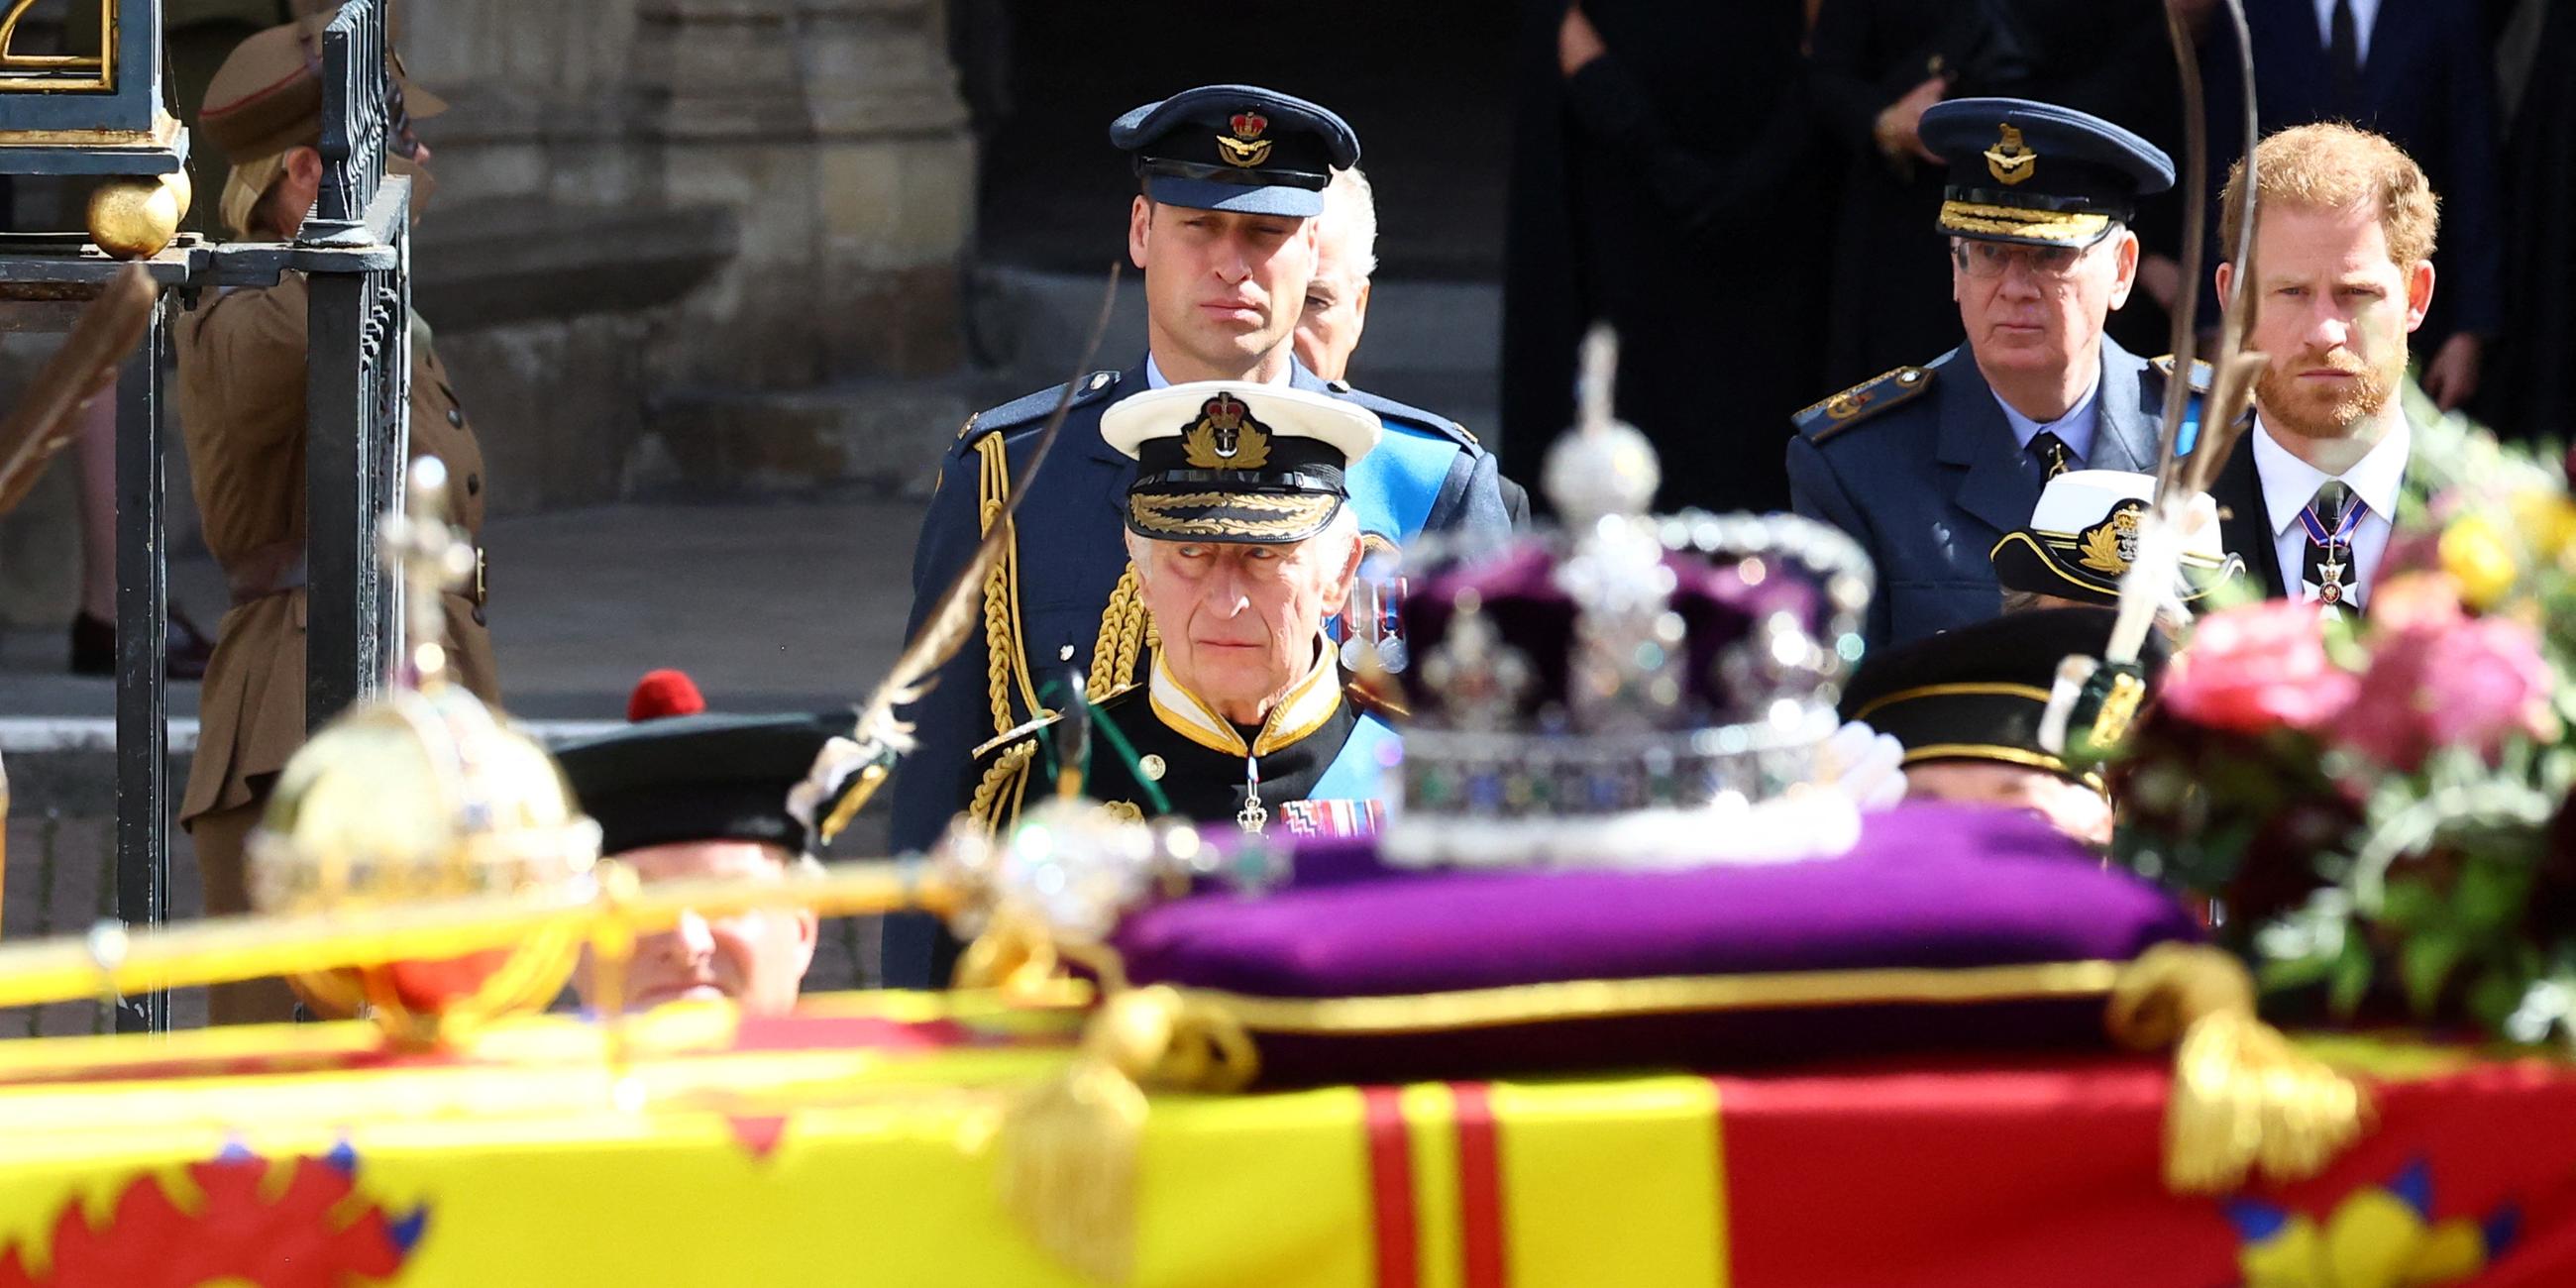 London: König Charles, Prinz William und Prinz Harry laufen hinter dem Sarg der verstorbenen Queen Elizabeth II.